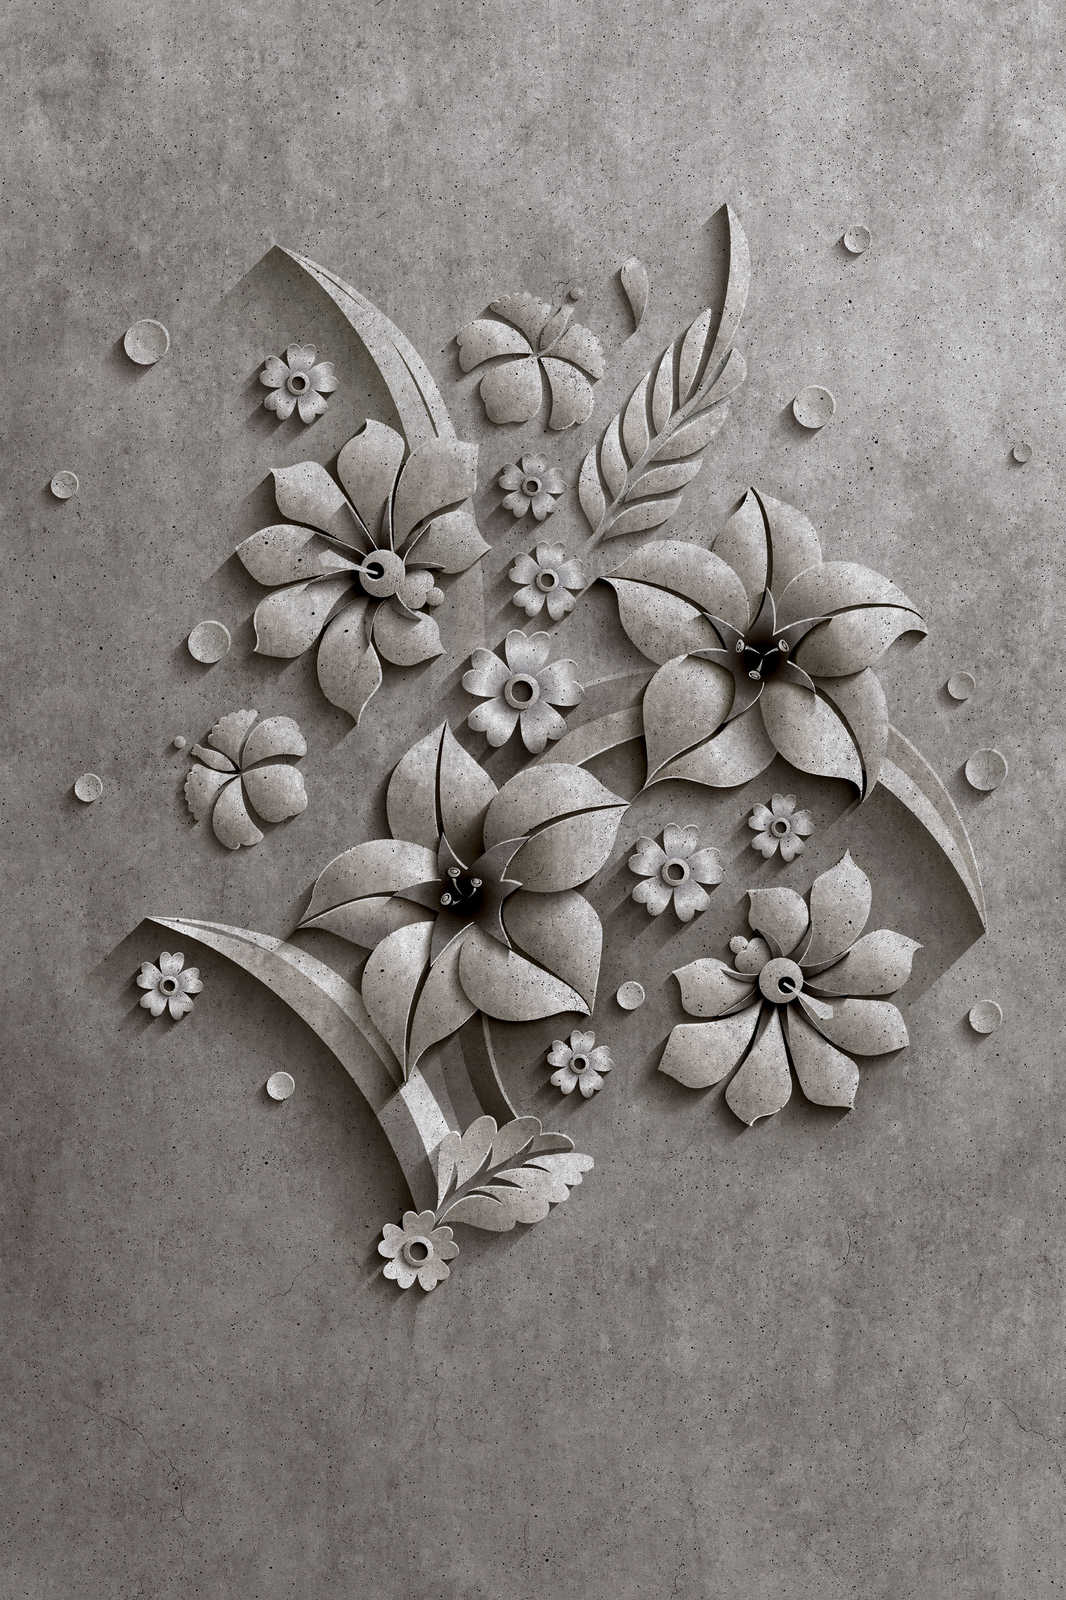             Rilievo 1 - Pittura su tela in struttura di cemento di un rilievo floreale - 0,90 m x 0,60 m
        